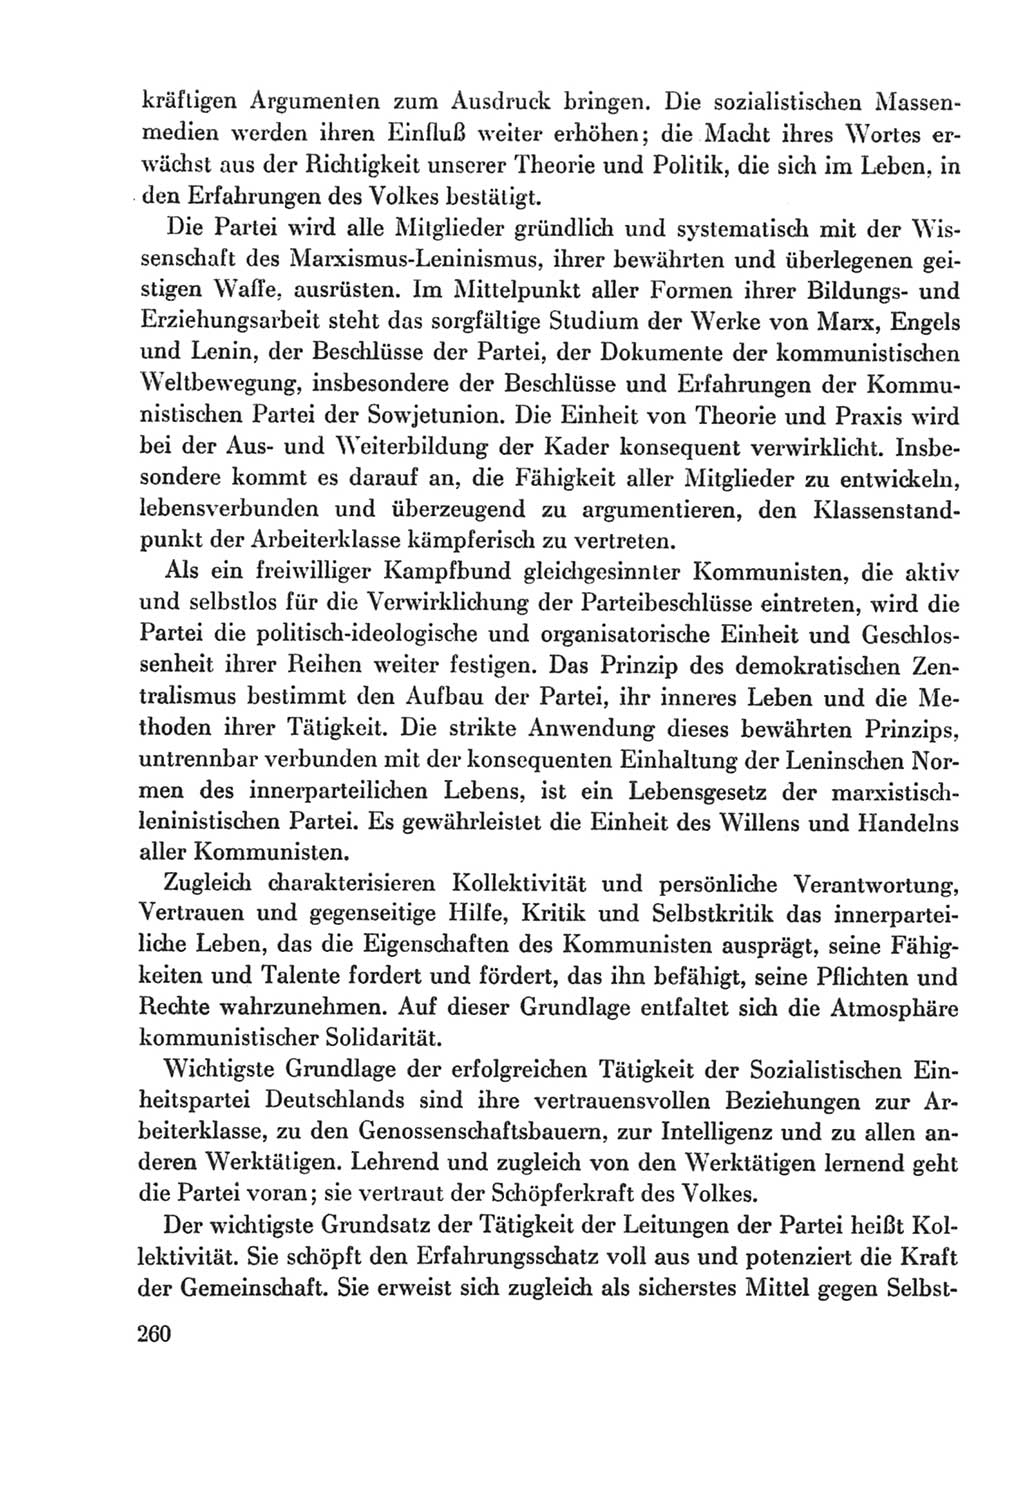 Protokoll der Verhandlungen des Ⅸ. Parteitages der Sozialistischen Einheitspartei Deutschlands (SED) [Deutsche Demokratische Republik (DDR)] 1976, Band 2, Seite 260 (Prot. Verh. Ⅸ. PT SED DDR 1976, Bd. 2, S. 260)